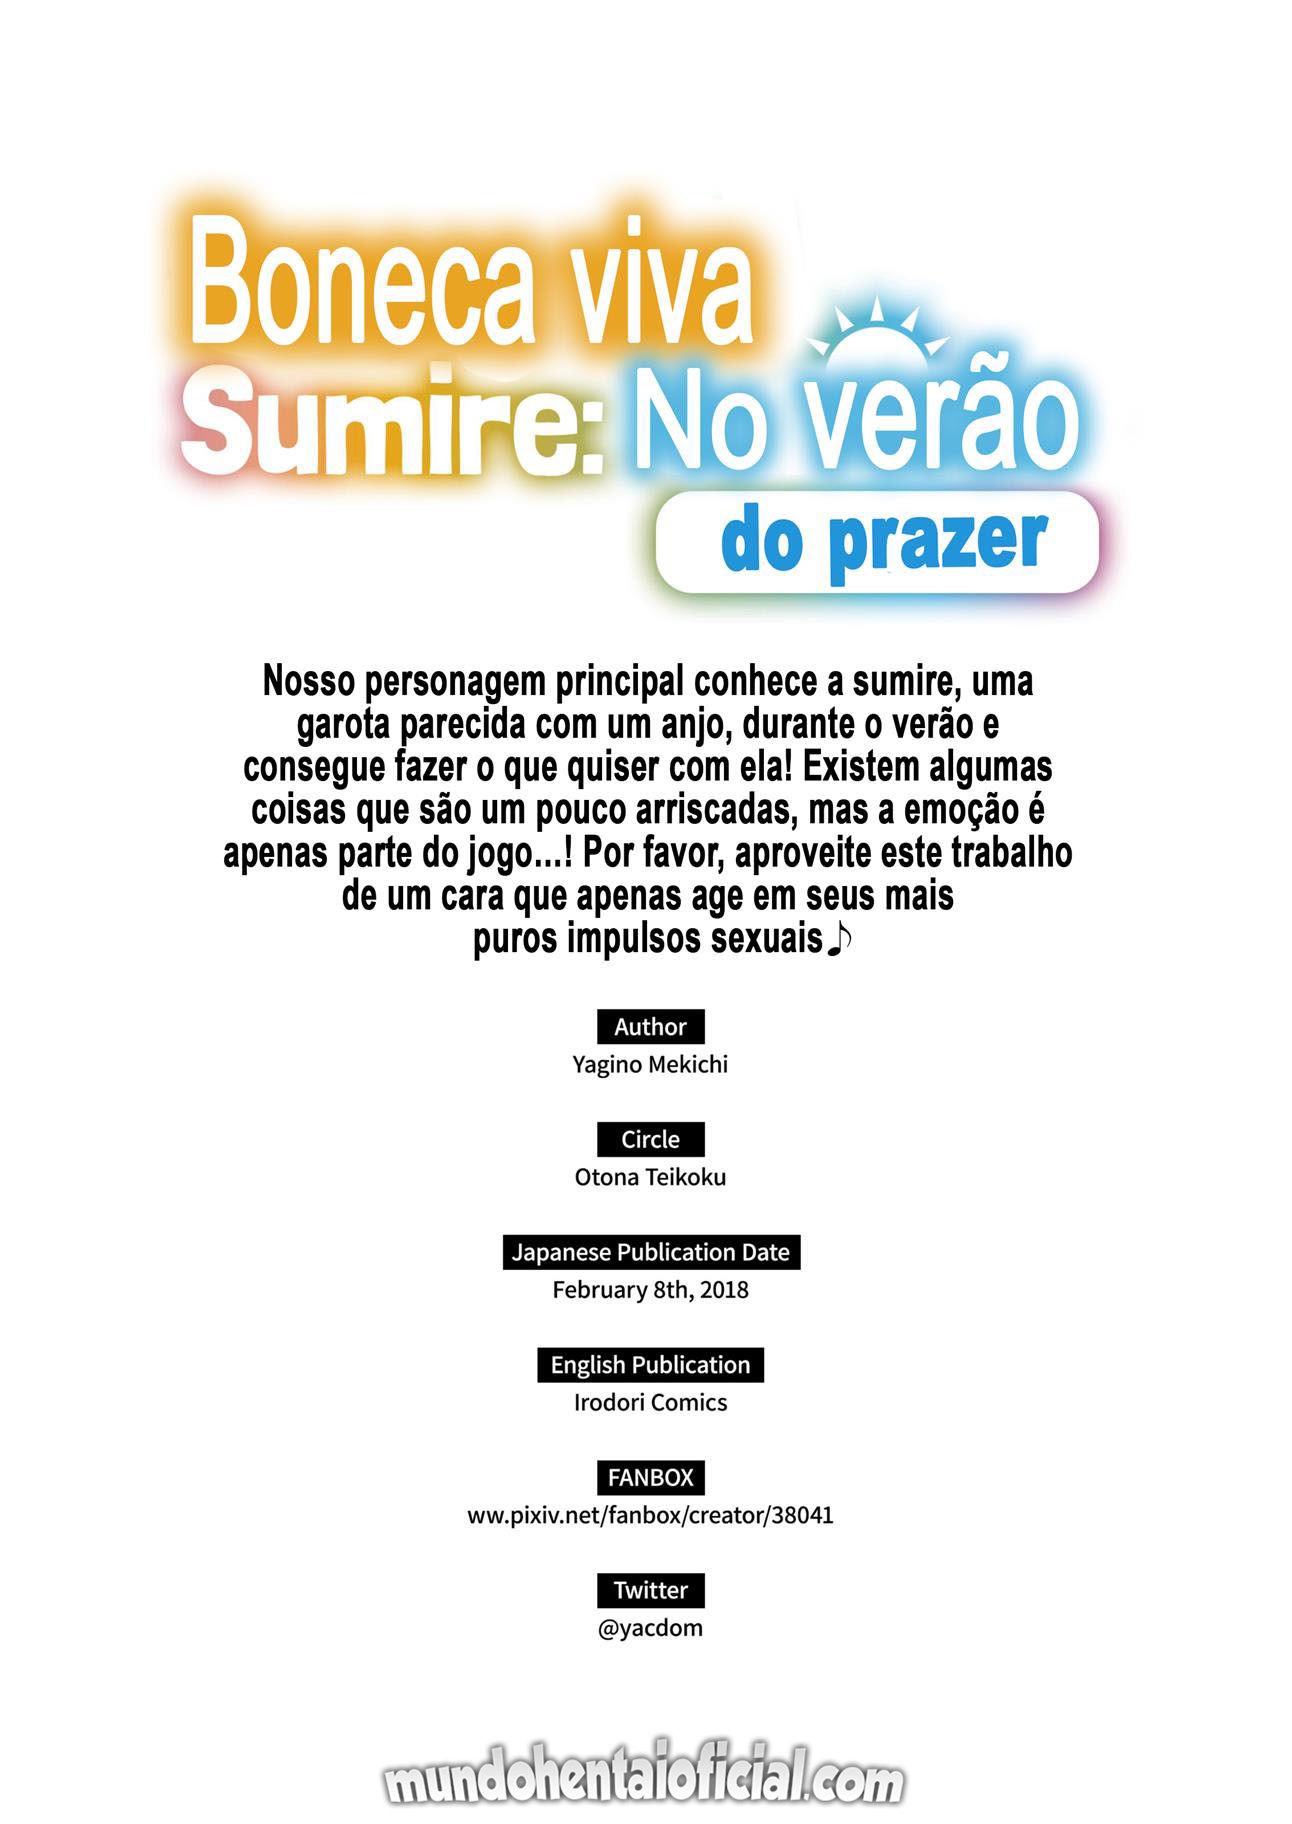 Boneca Viva Sumire: O Verão do Prazer